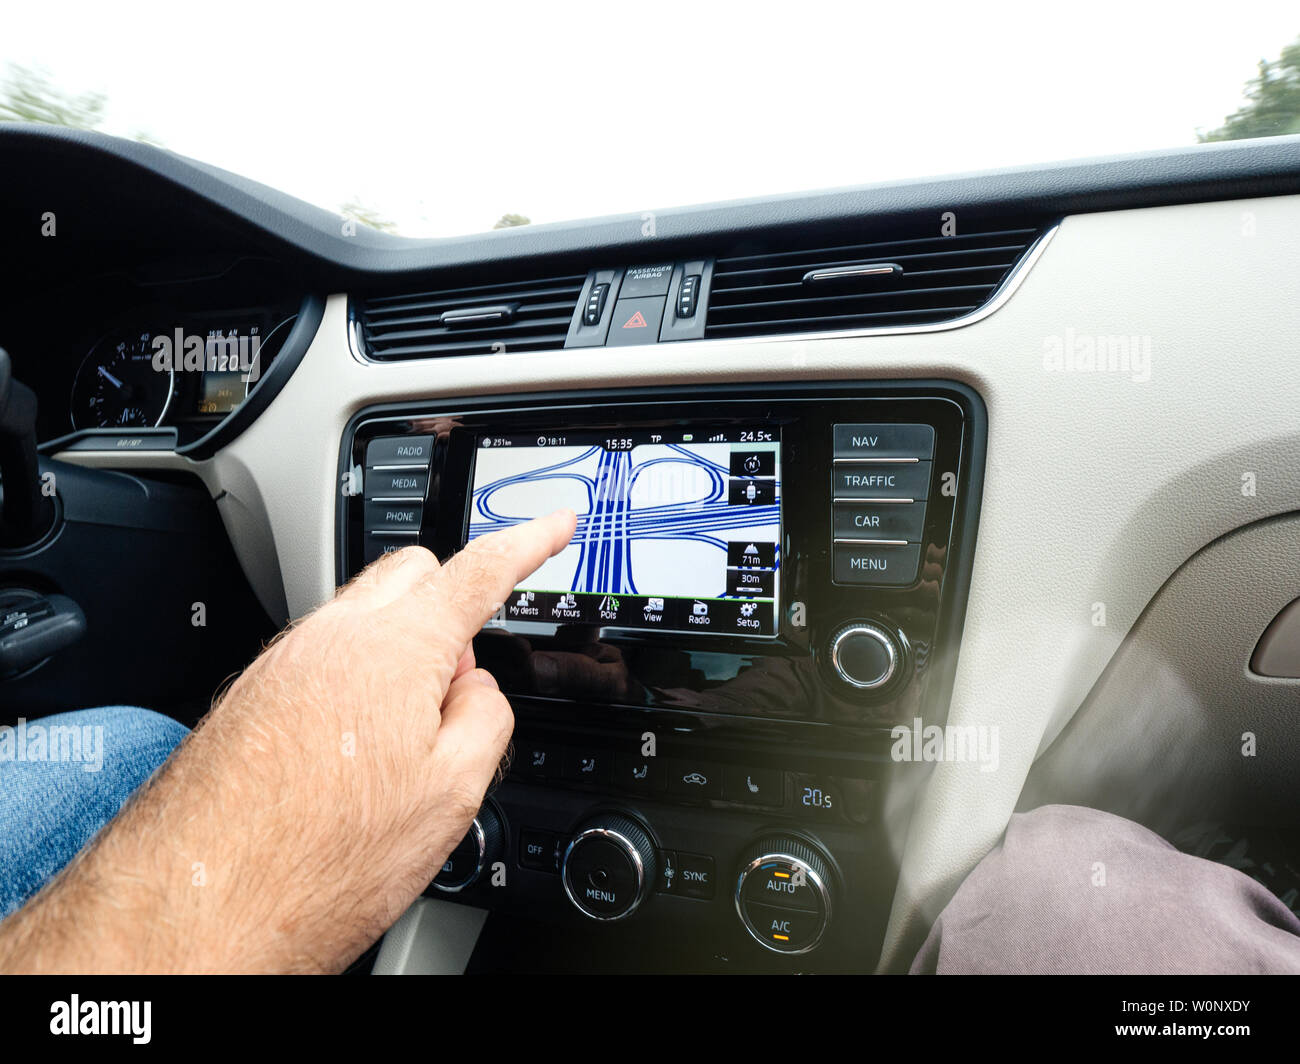 Cologne, Allemagne - 15 août 2018 : man main pointant vers le rond-point multiples sur la voiture modèle GPS intégré dans le tableau de bord de l'autoroute allemande Banque D'Images